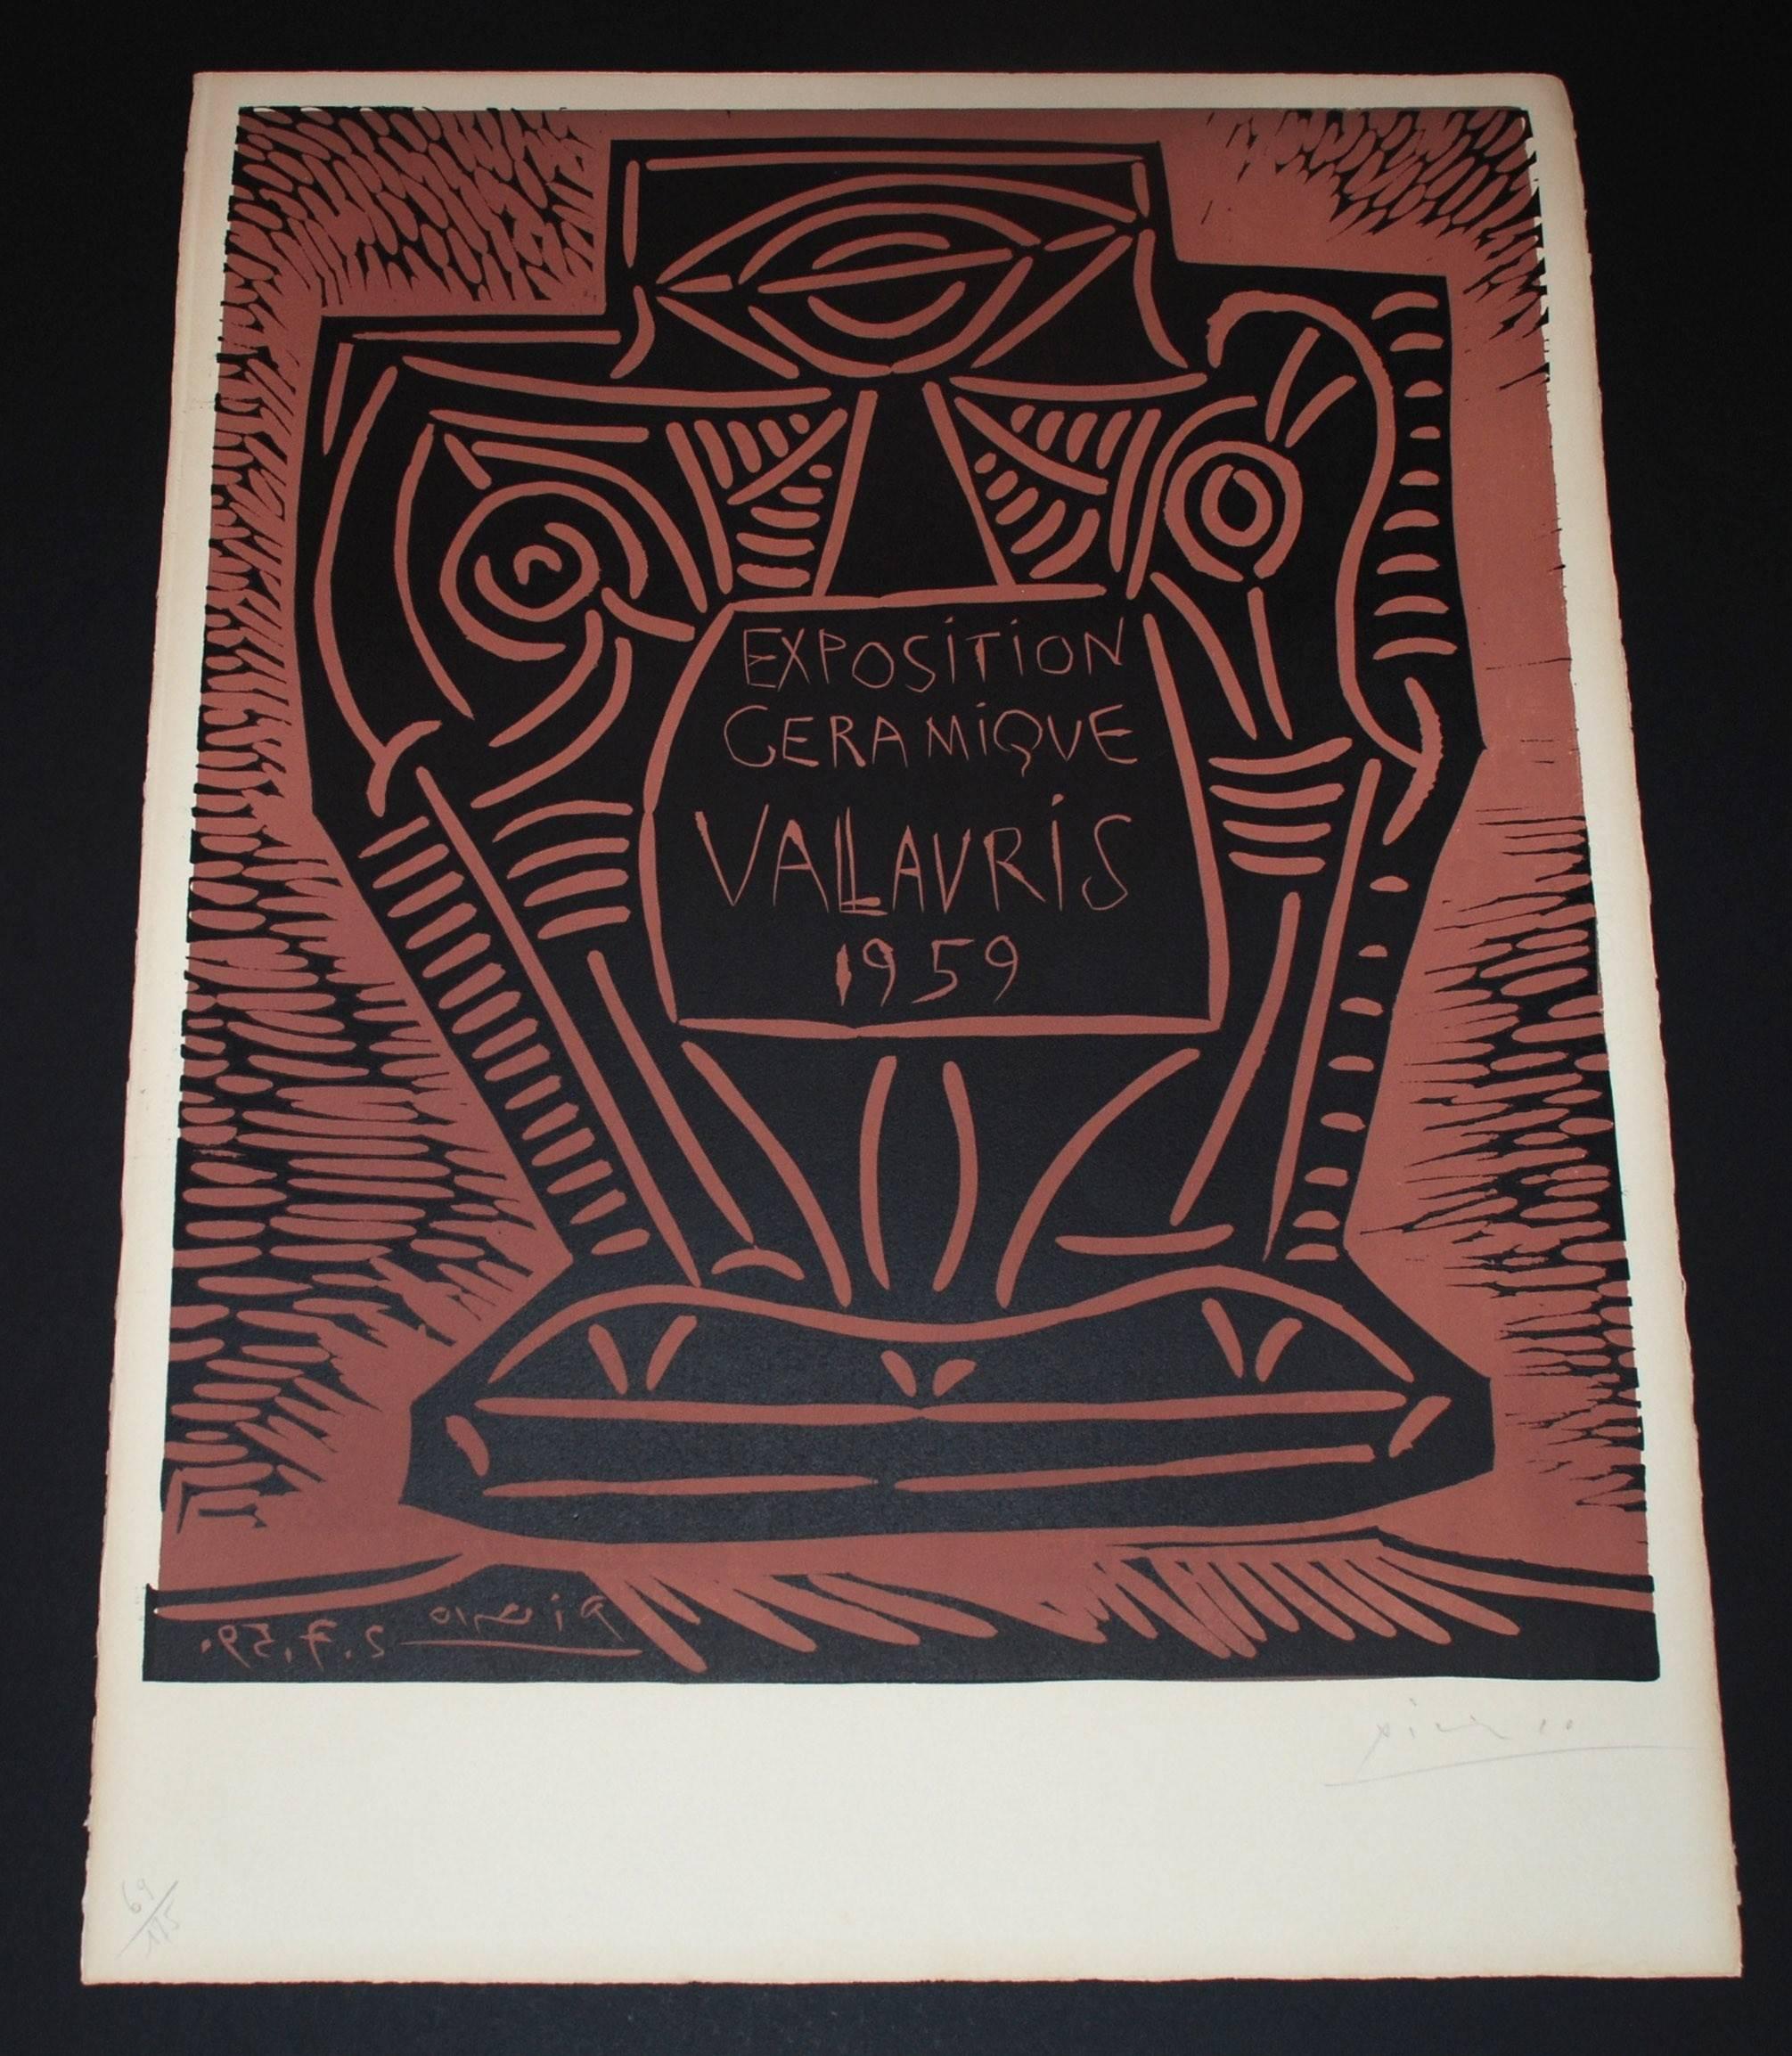 Exposition Ceramique Vallauris 1959 II 1